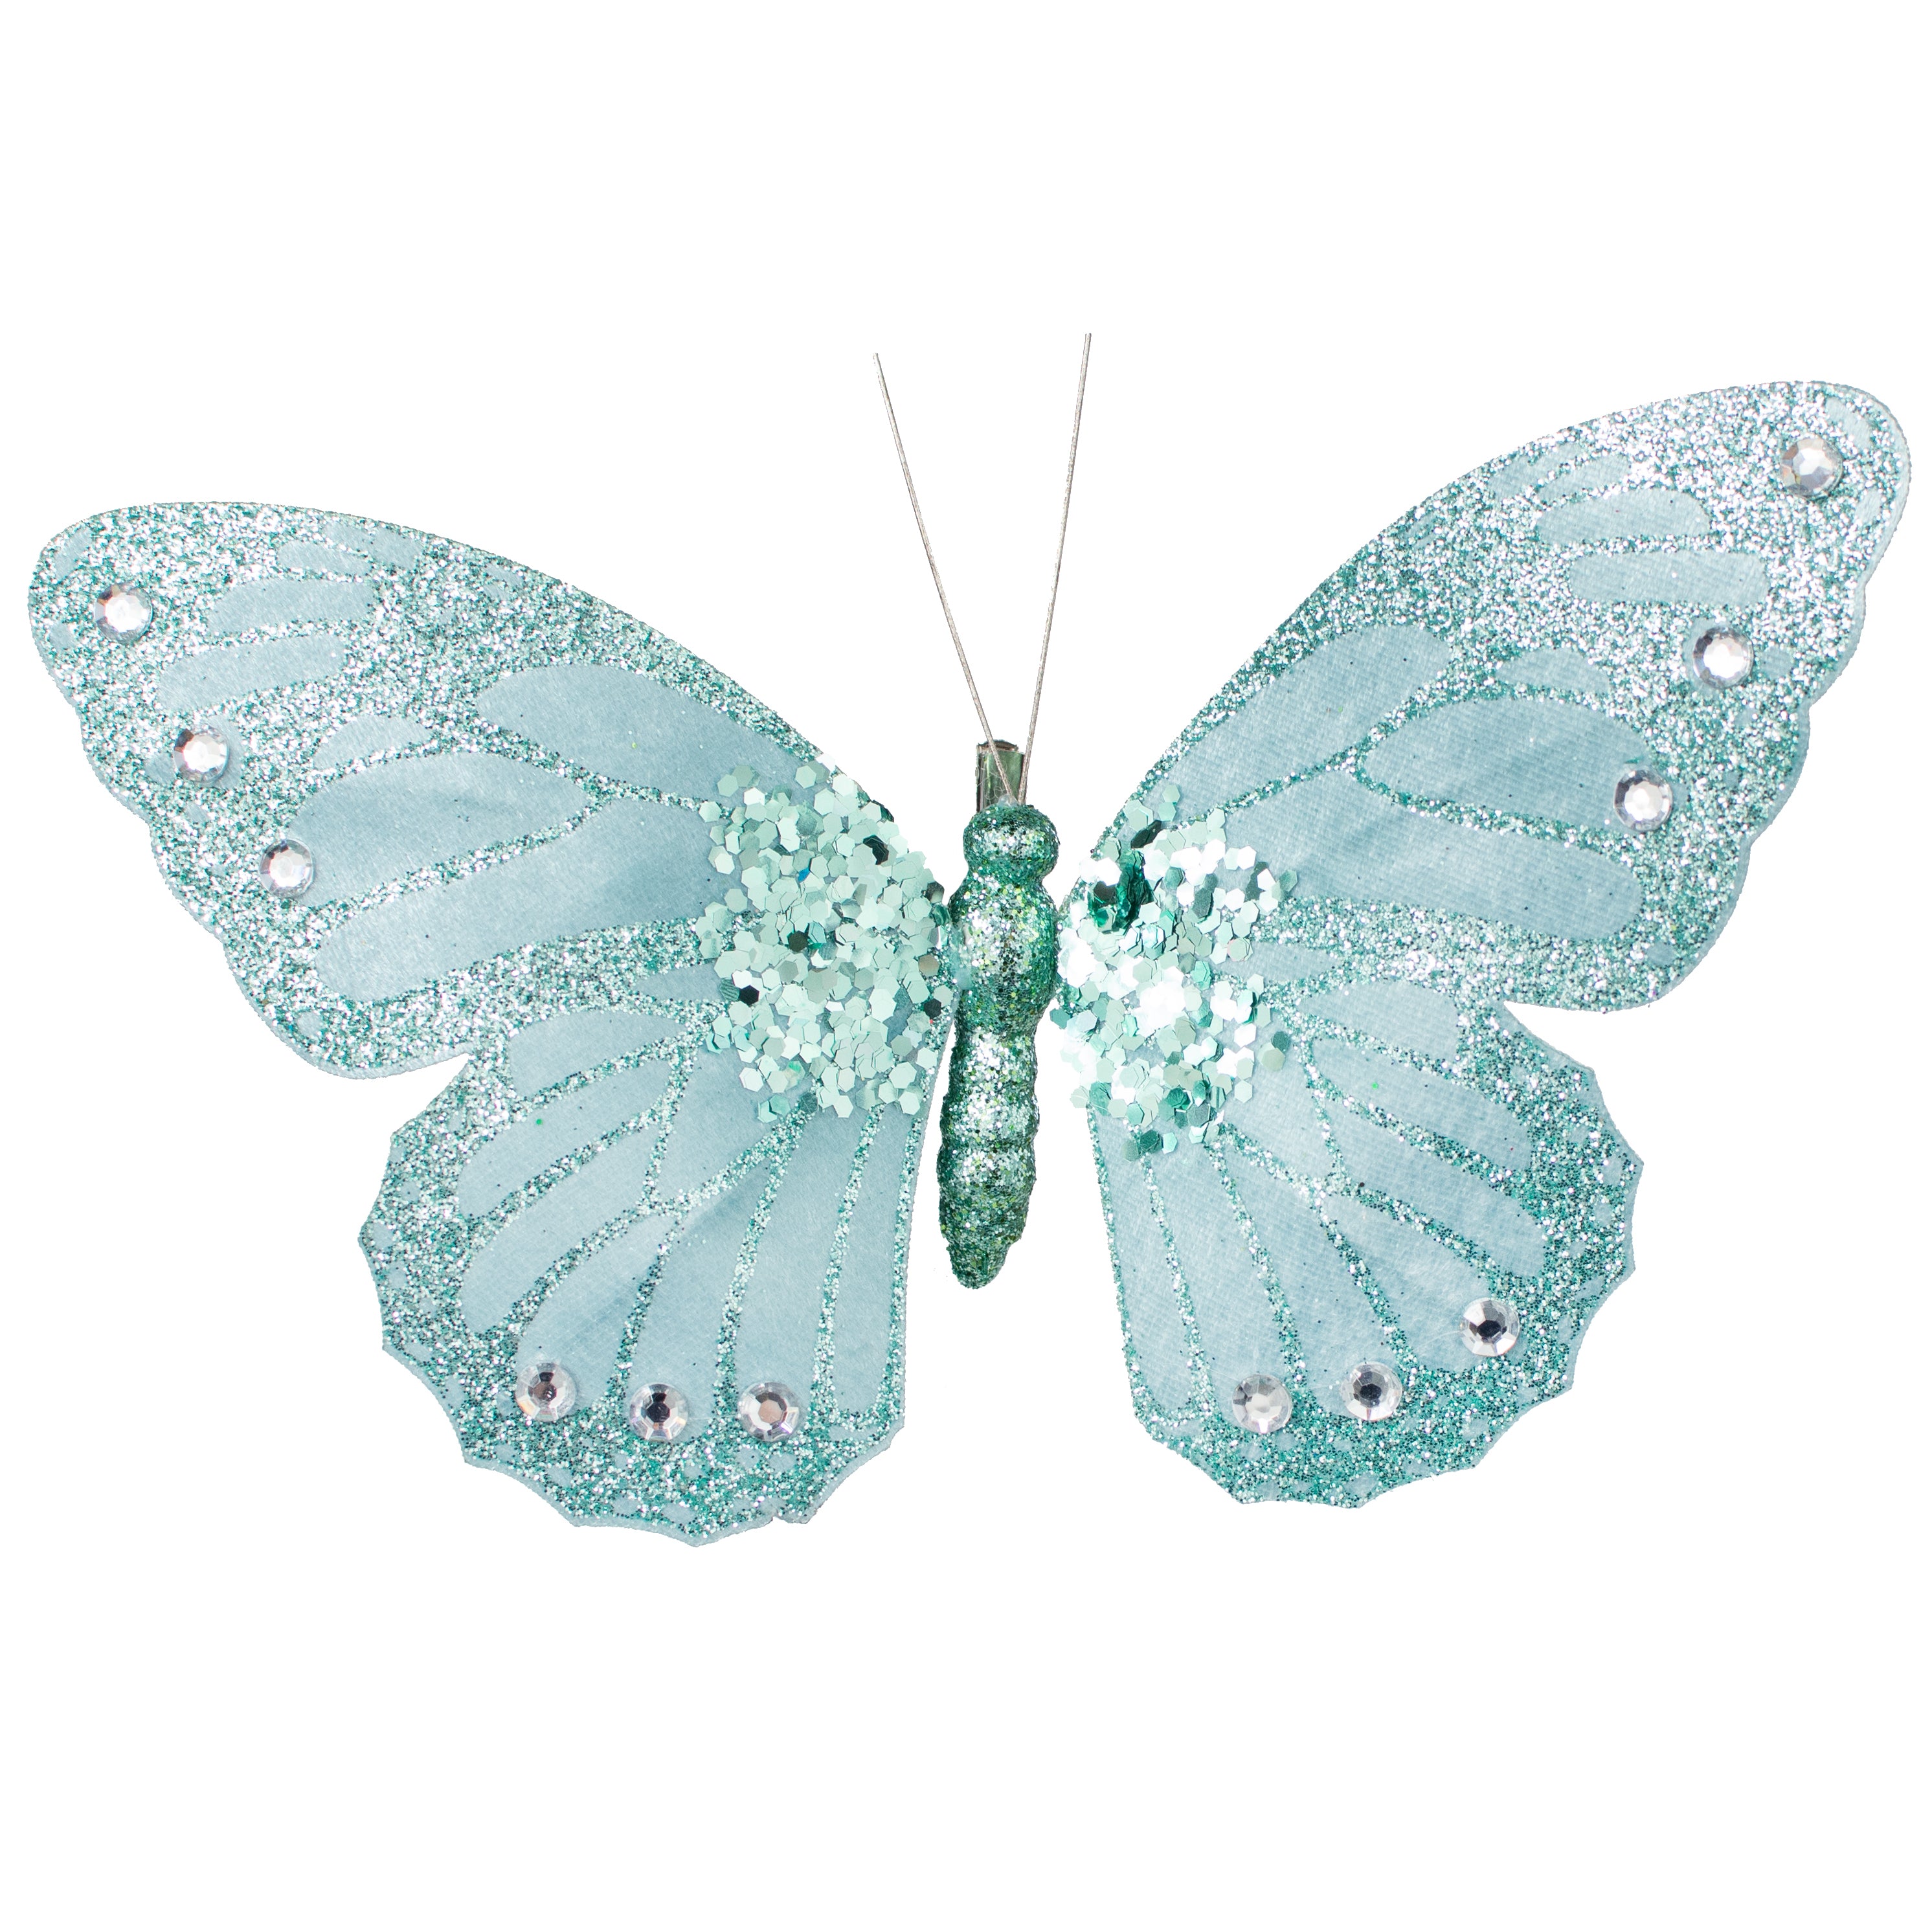 9" Velvet, Glitter, Gem Butterfly Ornament: Turquoise